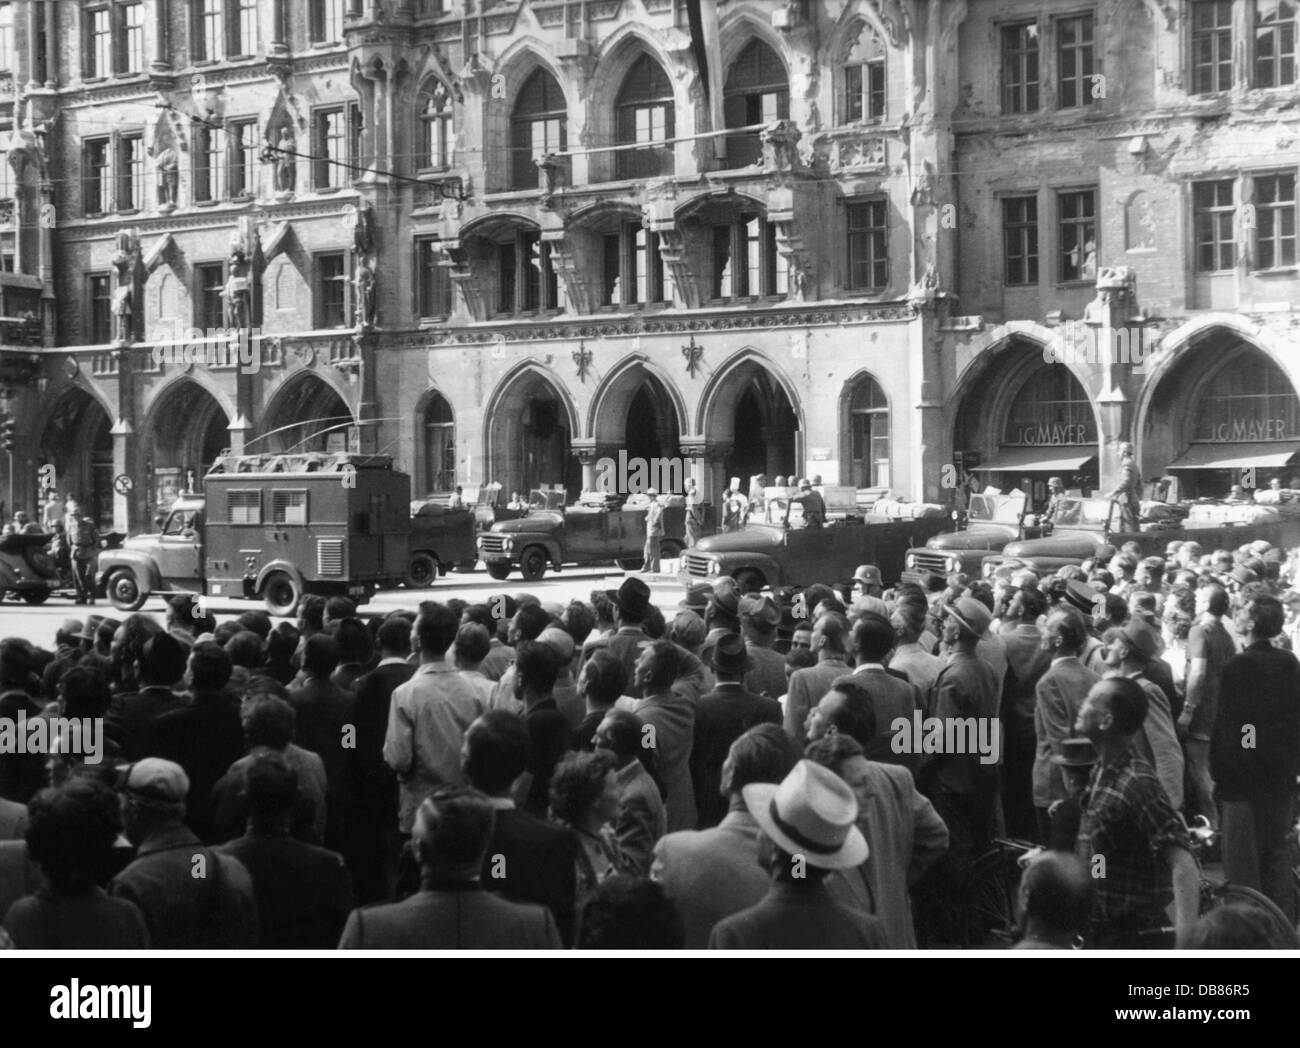 Demonstrationen, Deutschland, Proteste gegen verlängerte Öffnungszeiten am Samstag, Marienplatz, München, Deutschland, 20.6.1953, Zusatzrechte-Clearences-nicht verfügbar Stockfoto